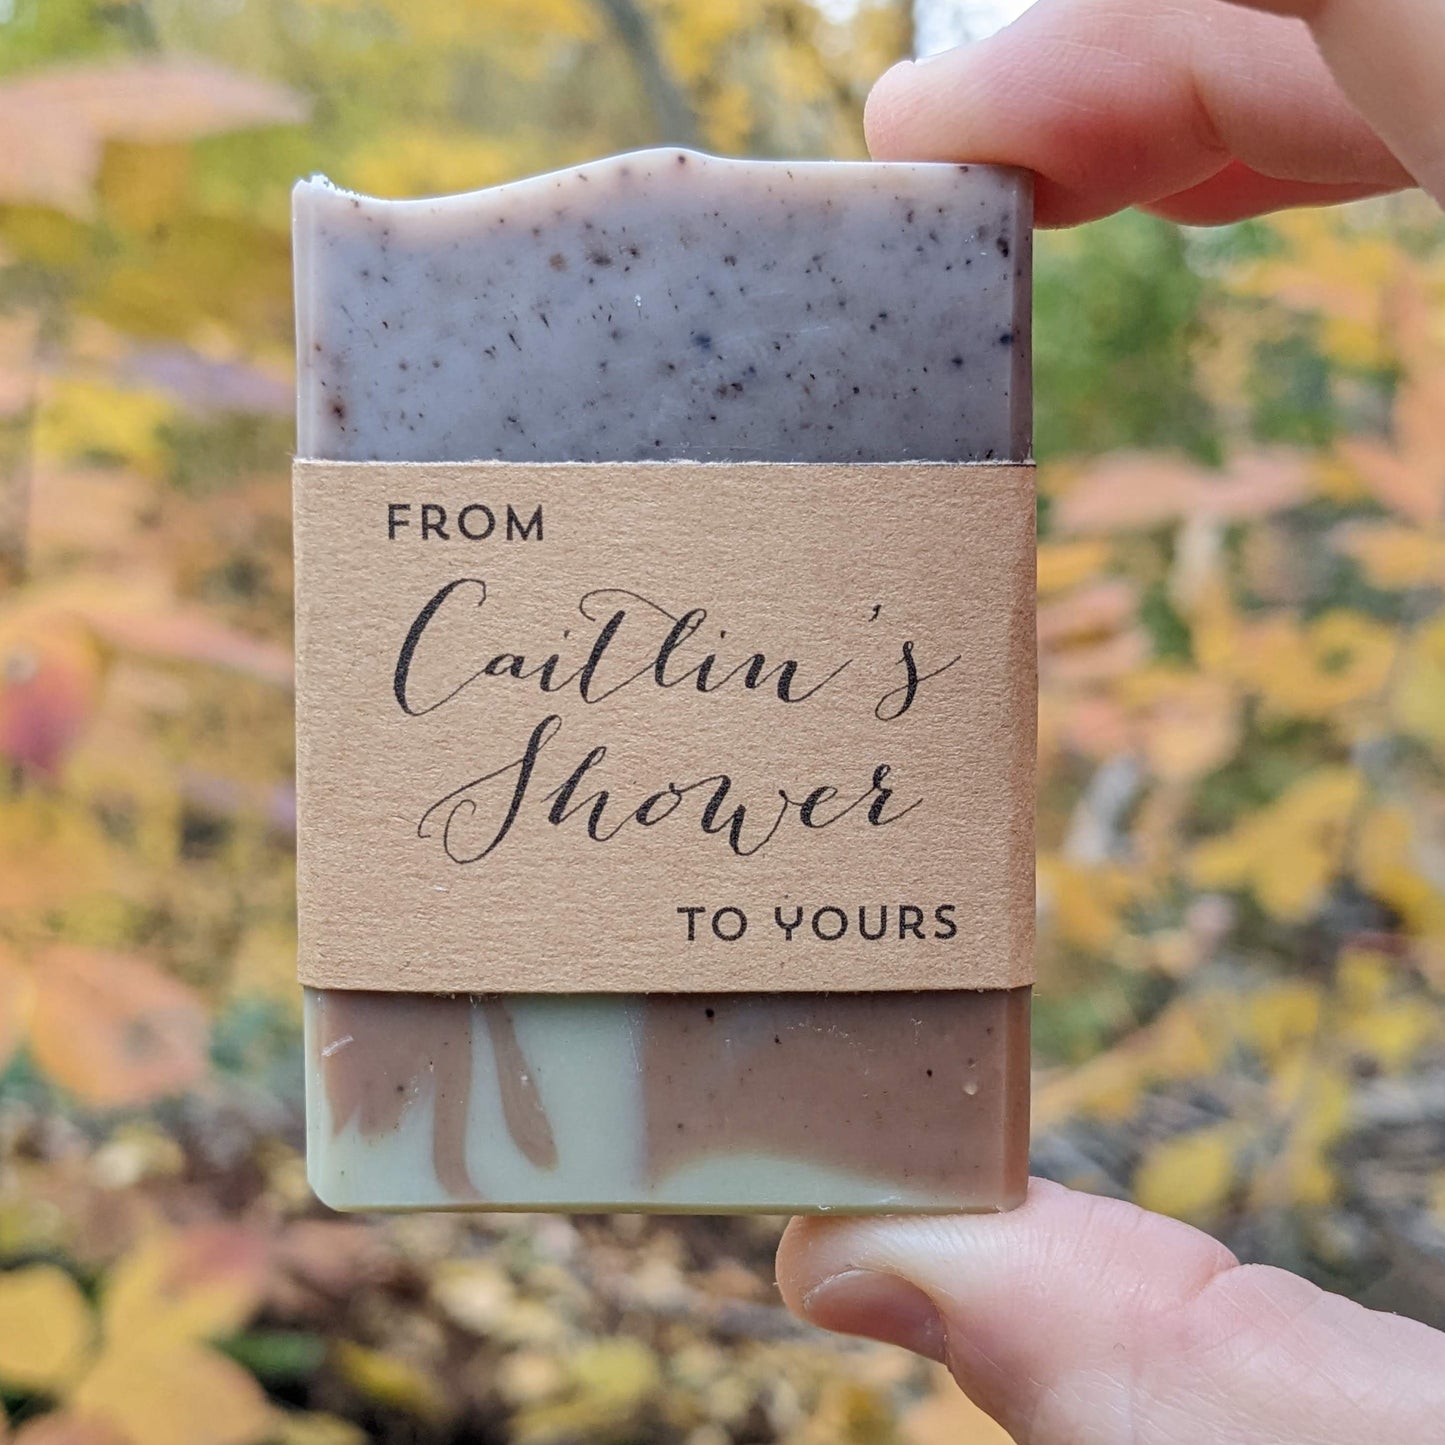 Ensemble de 20 mini cadeaux de savon (1 oz) pour les mariages, les douches ou les invités Airbnb